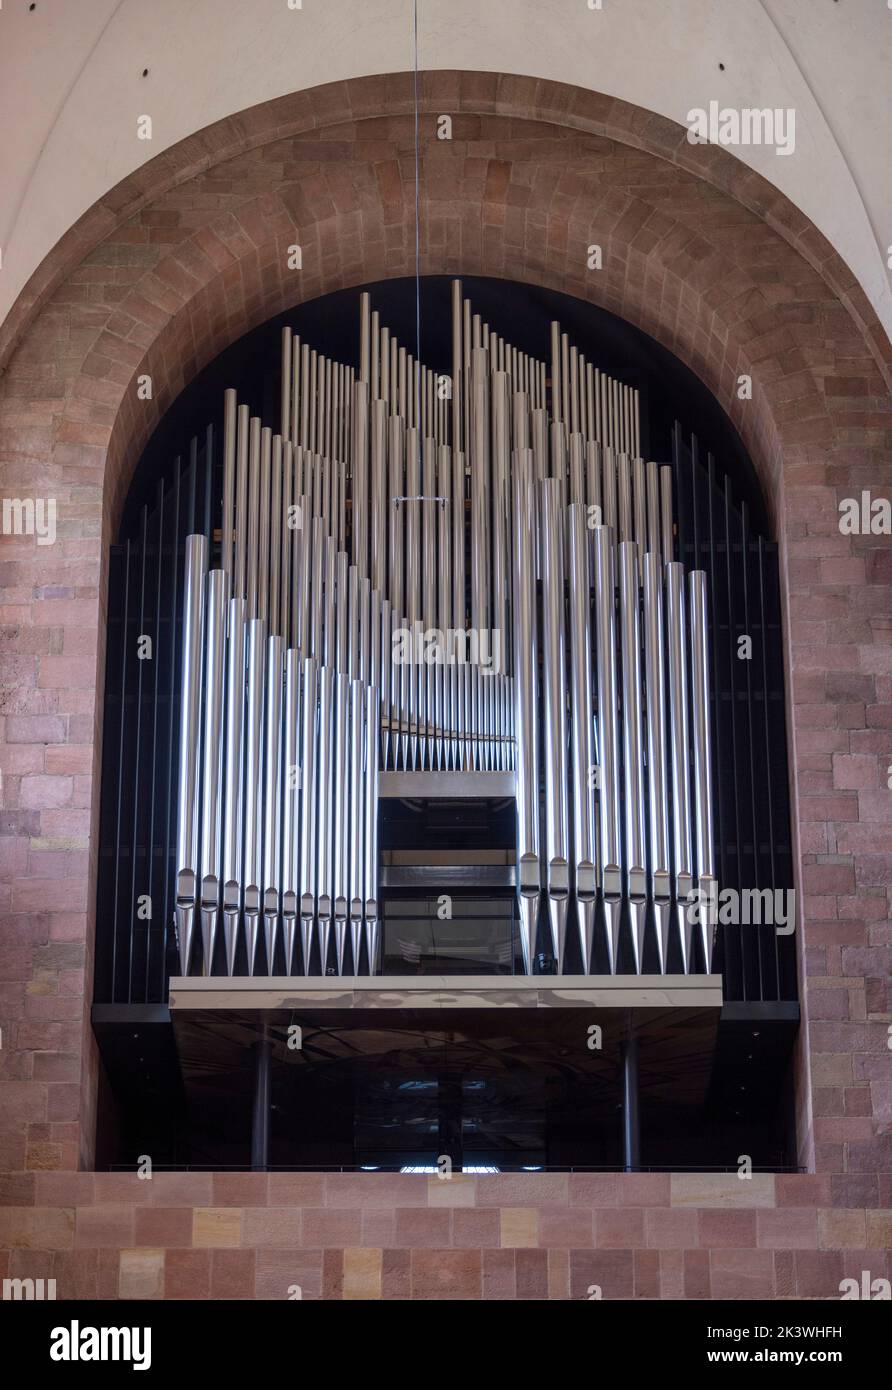 El órgano principal, la Catedral de Speyer, Speyer, Alemania Foto de stock